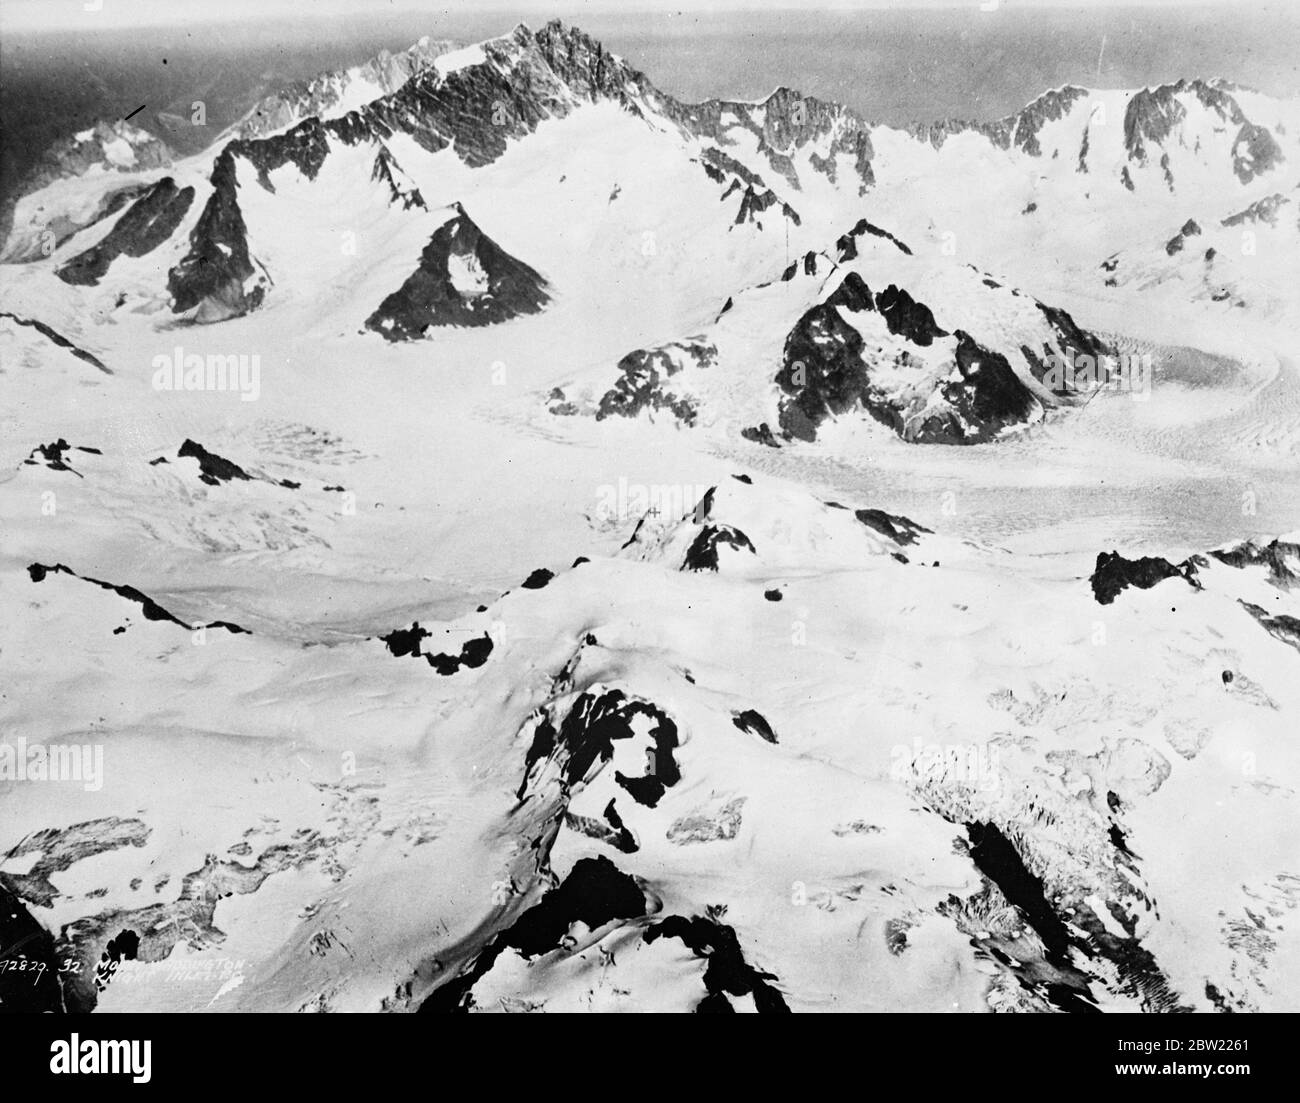 Una foto dell'aeronautica canadese delle montagne della catena montuosa della Wild Coast, alte oltre 13,000 metri a nord di Vancouver, Knight Inlet nel Canada nord-occidentale. Al centro destra, Mount Waddington. 21 settembre 1937 [?] Foto Stock